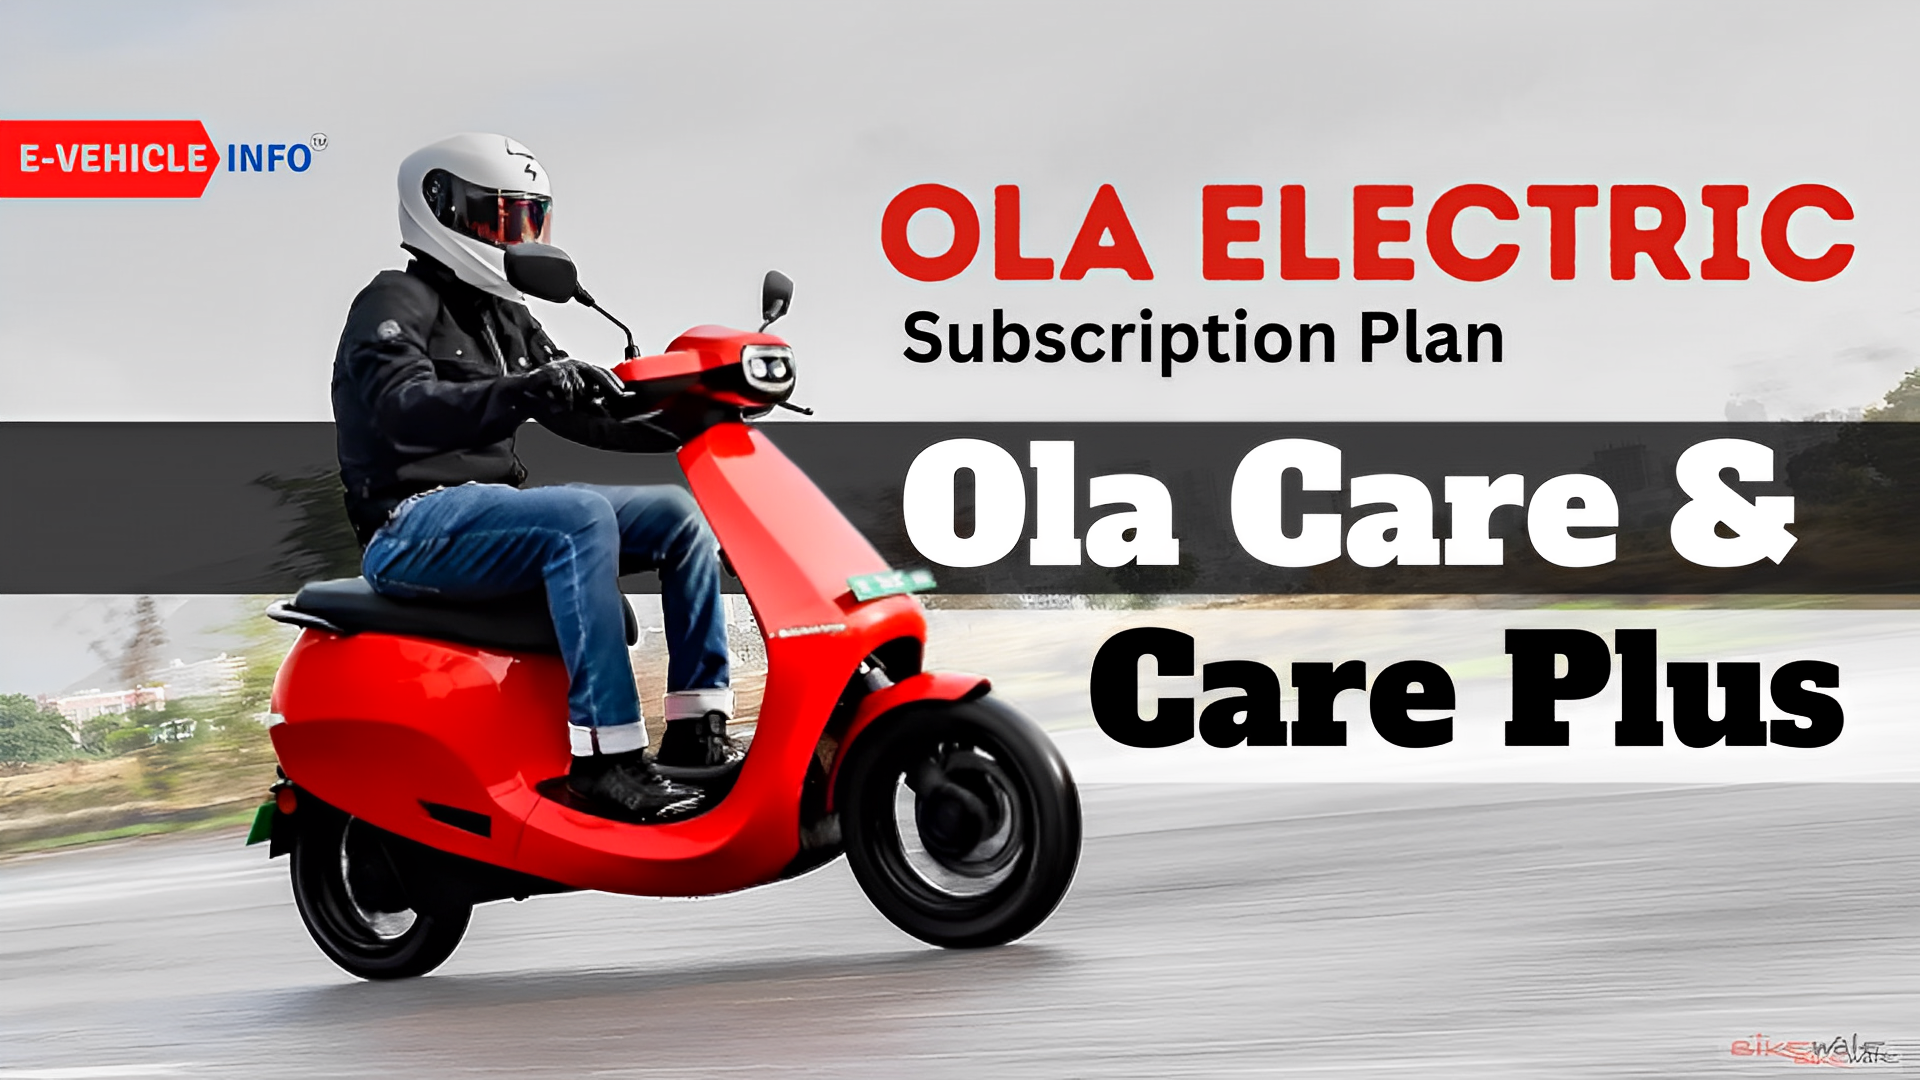 Ola Electric Subscription Plan: Ola Care & Care Plus